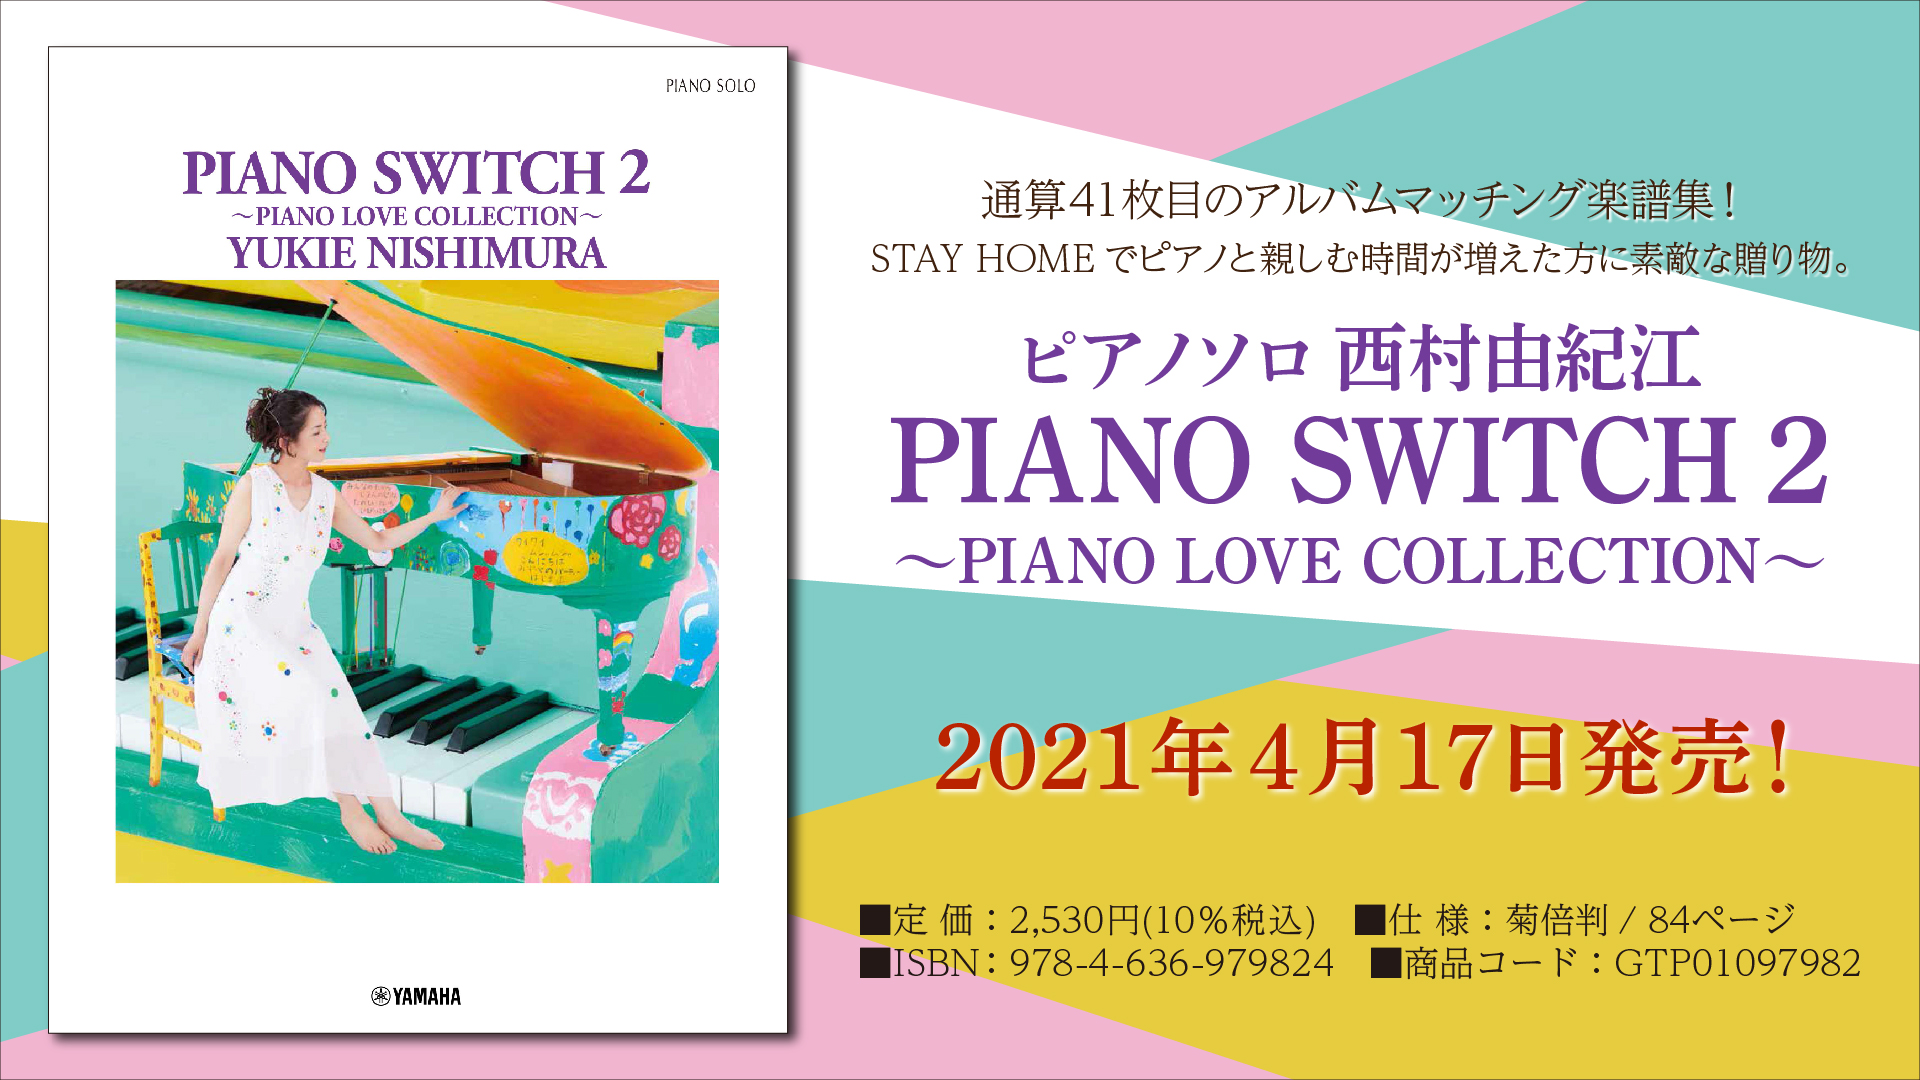 ピアノソロ 西村由紀江 「PIANO SWITCH 2 ～PIANO LOVE COLLECTION～」』 4月17日発売！ | NEWSCAST